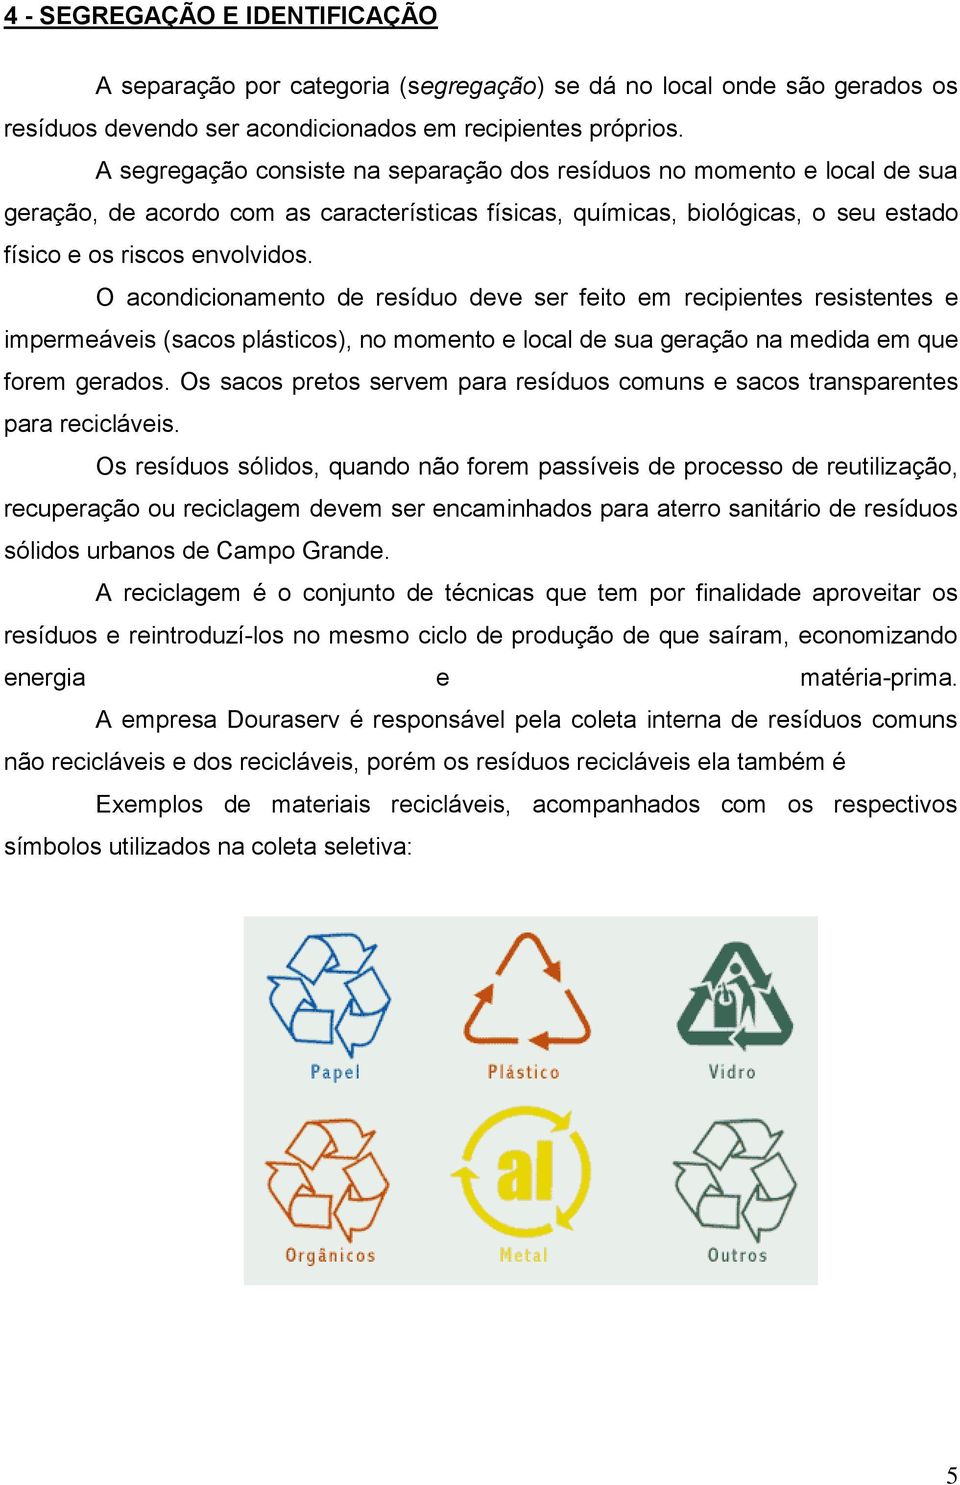 O acondicionamento de resíduo deve ser feito em recipientes resistentes e impermeáveis (sacos plásticos), no momento e local de sua geração na medida em que forem gerados.